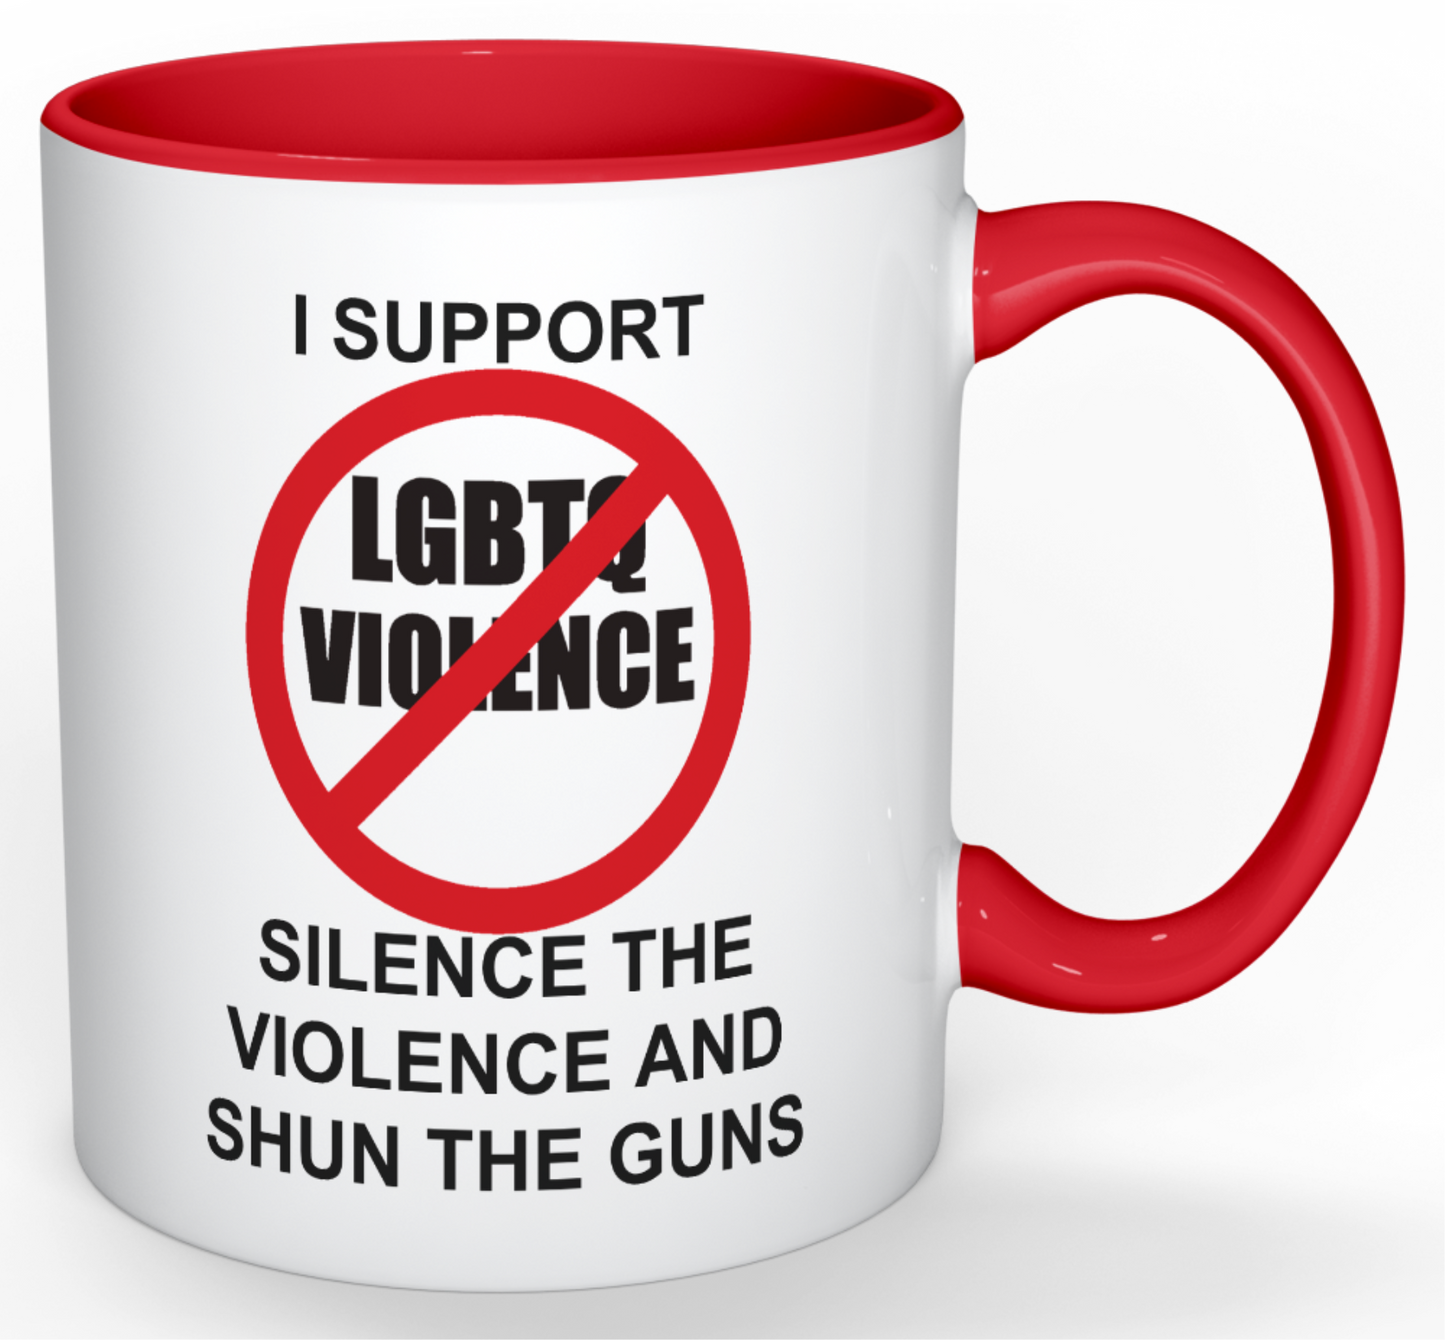 THE ANTI-VIOLENCE AGAINST LGBTQ COFFEE MUG